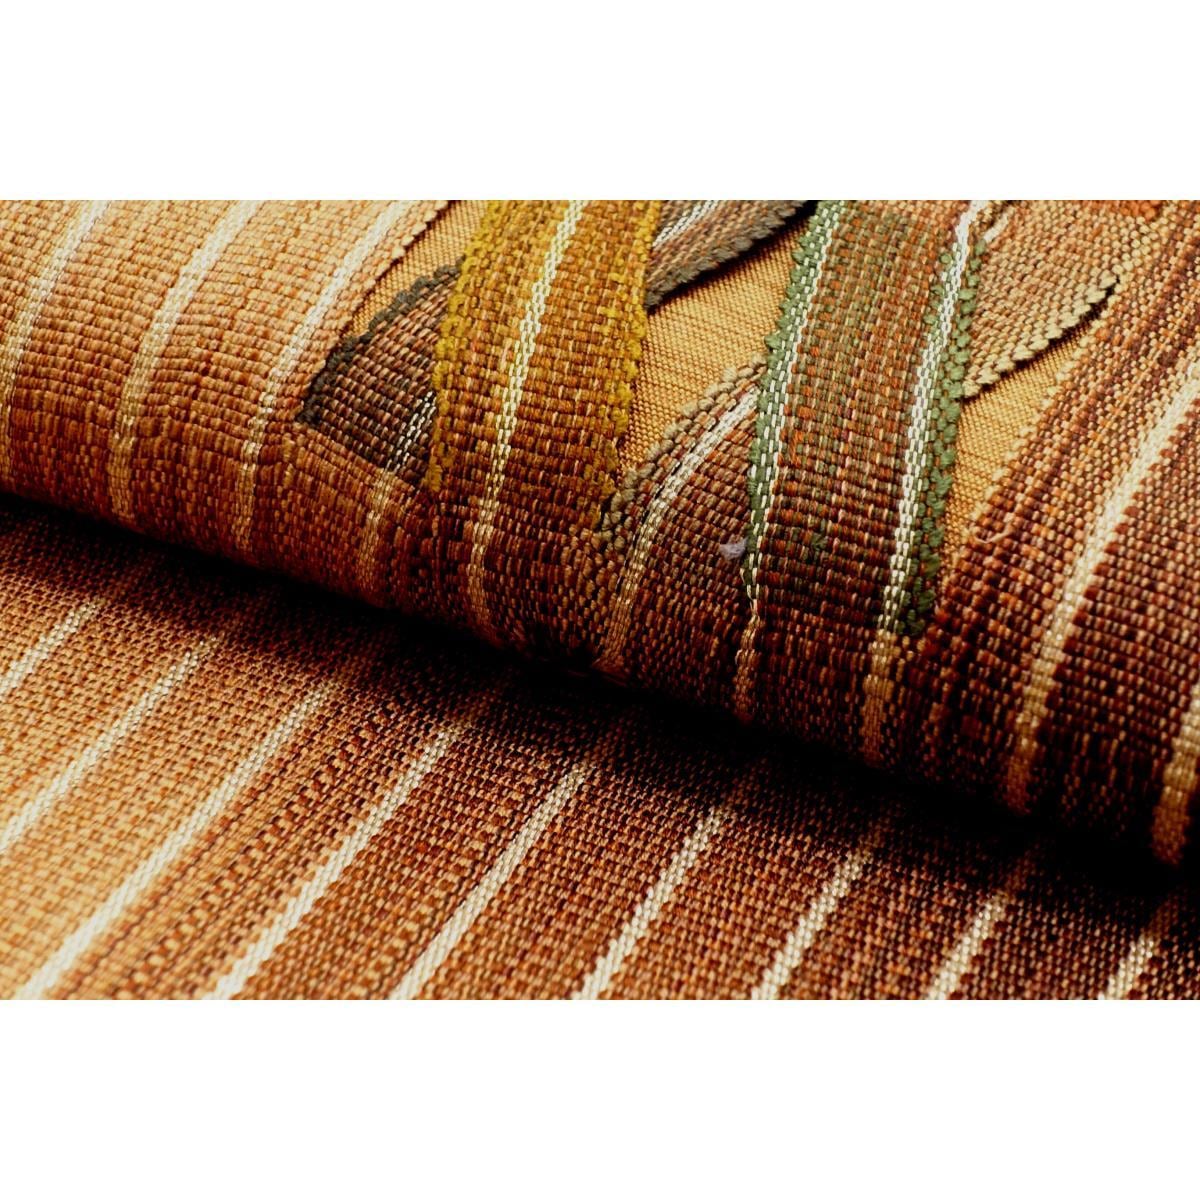 [Unused items] Fukuro obi, braided weave, no core